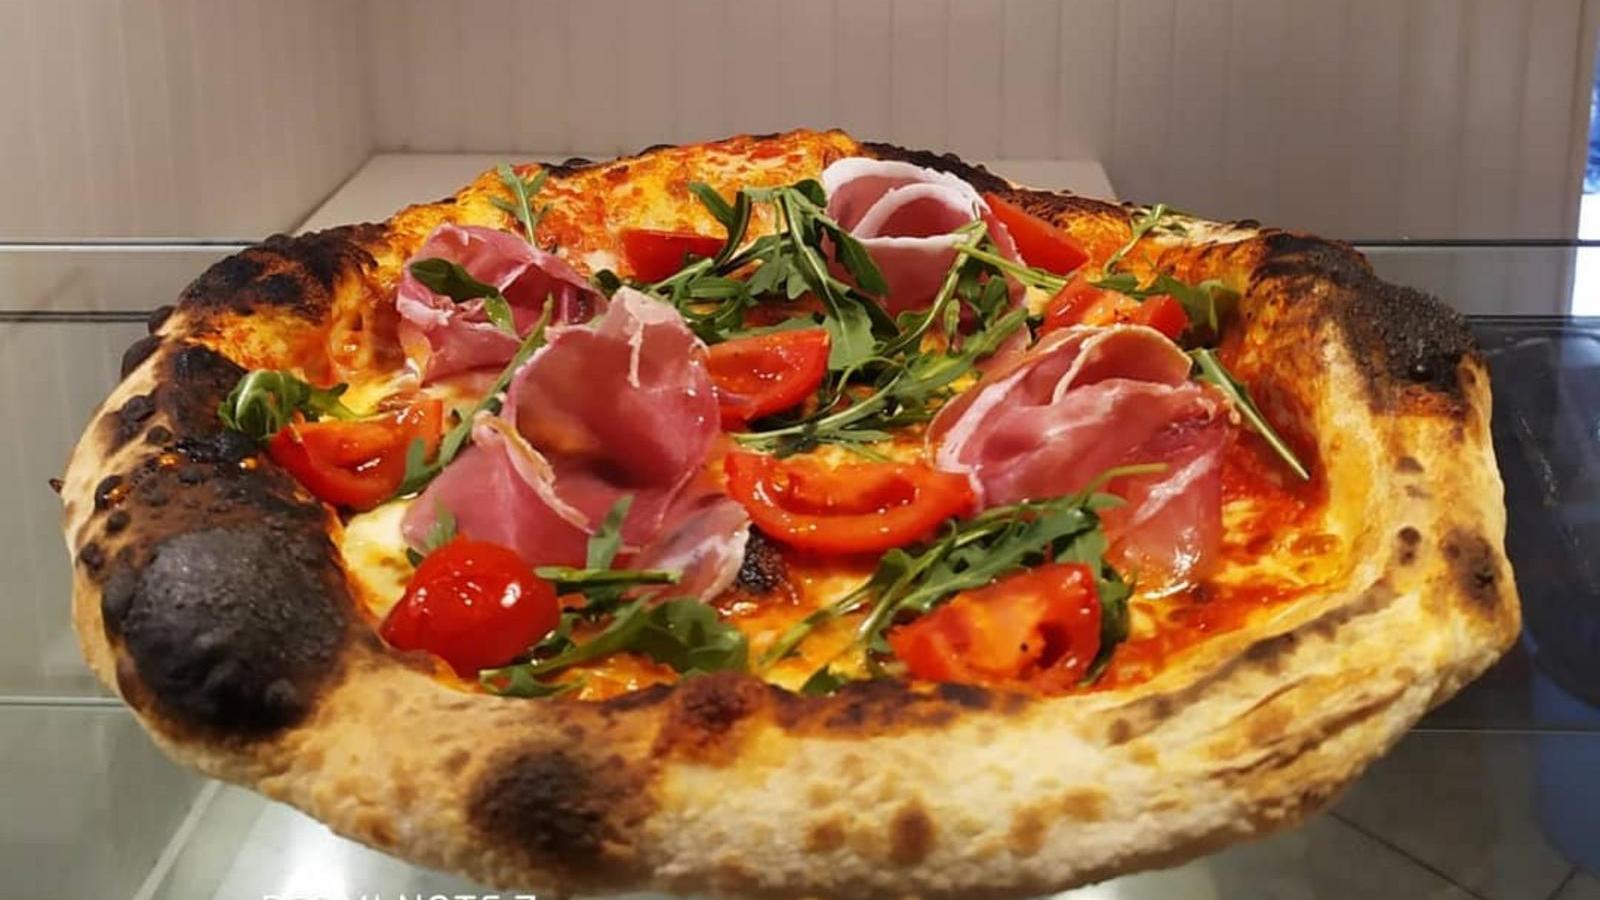 Miglior pizzeria a Foggia - Pizzeria Romana 2 | Localtourism.it